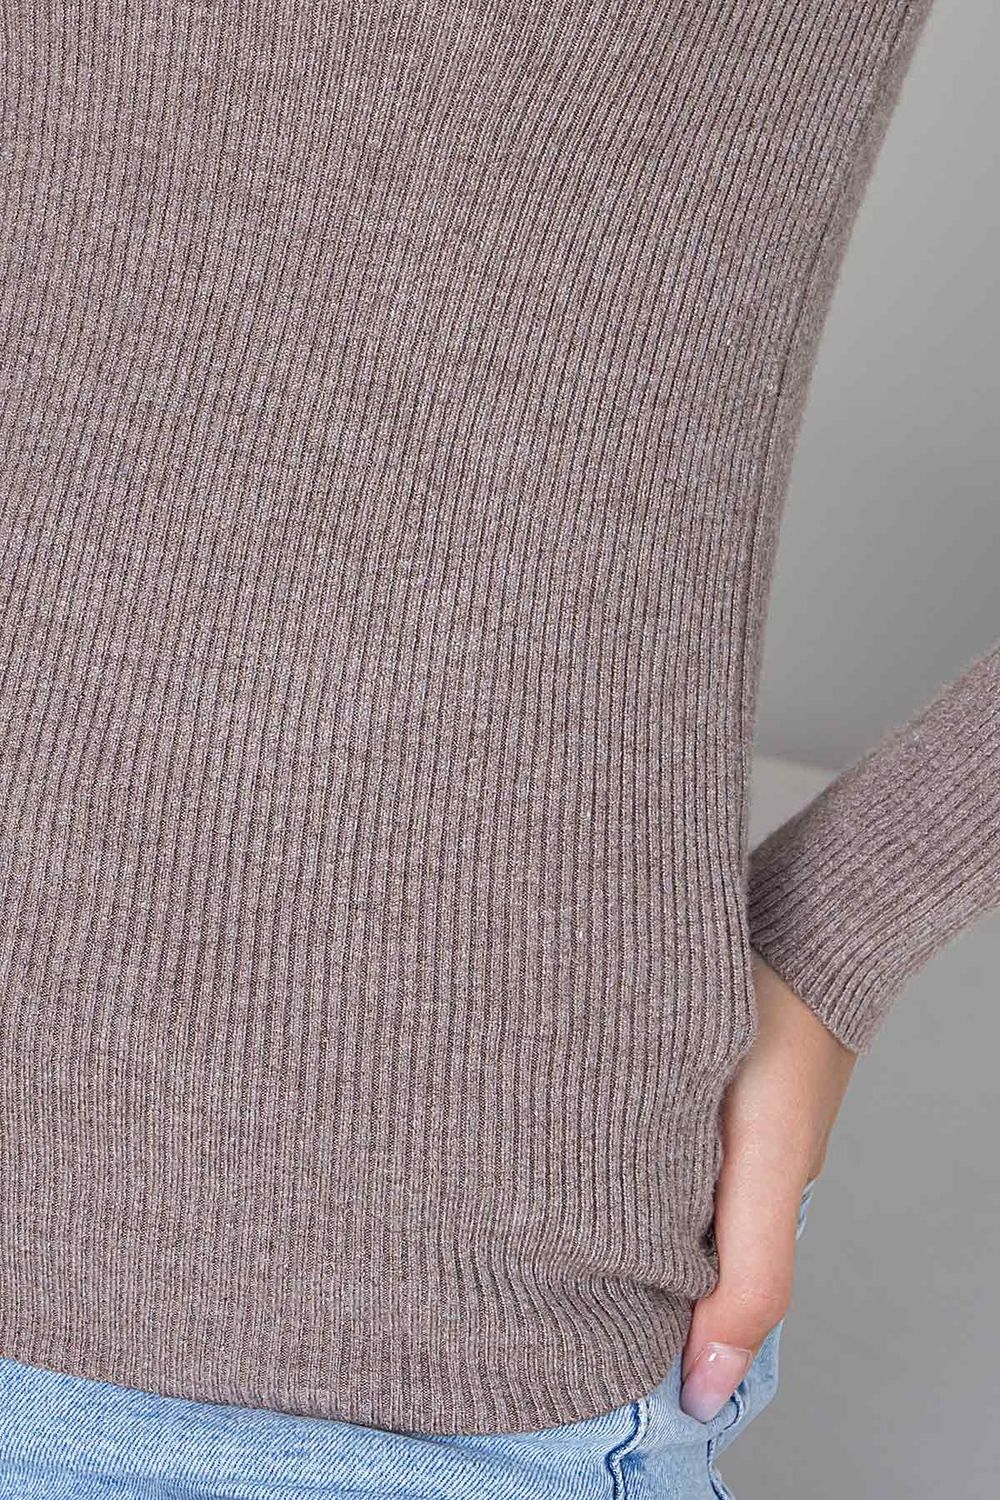 Женская базовая кофточка джемпер цвета капучино - фото